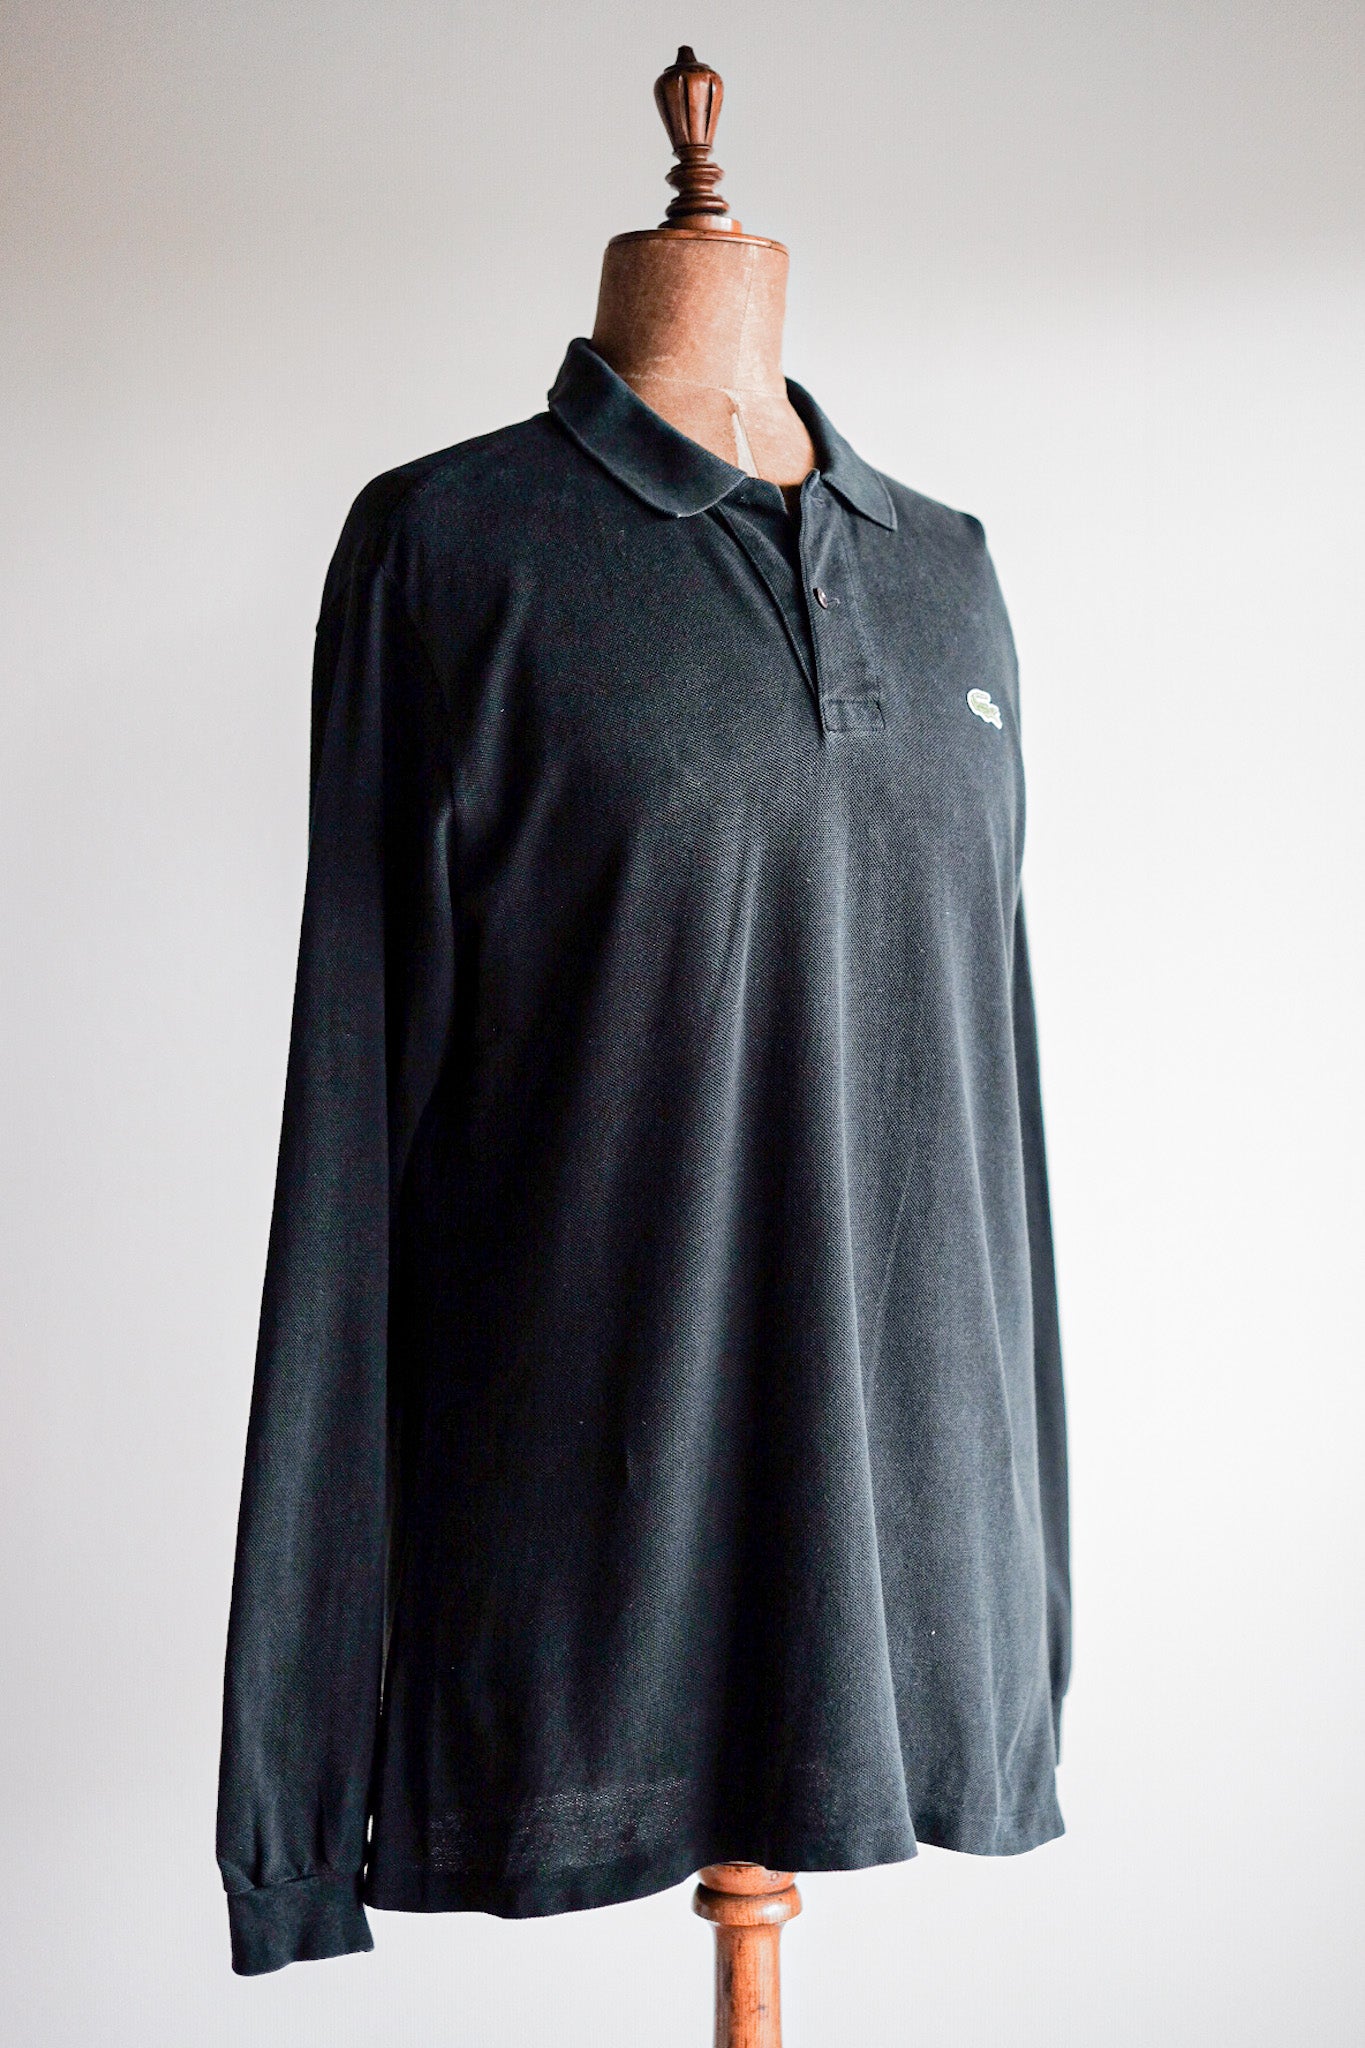 [~ 80 년대] Chemise lacoste l/s 폴로 셔츠 크기 .5 "Black"